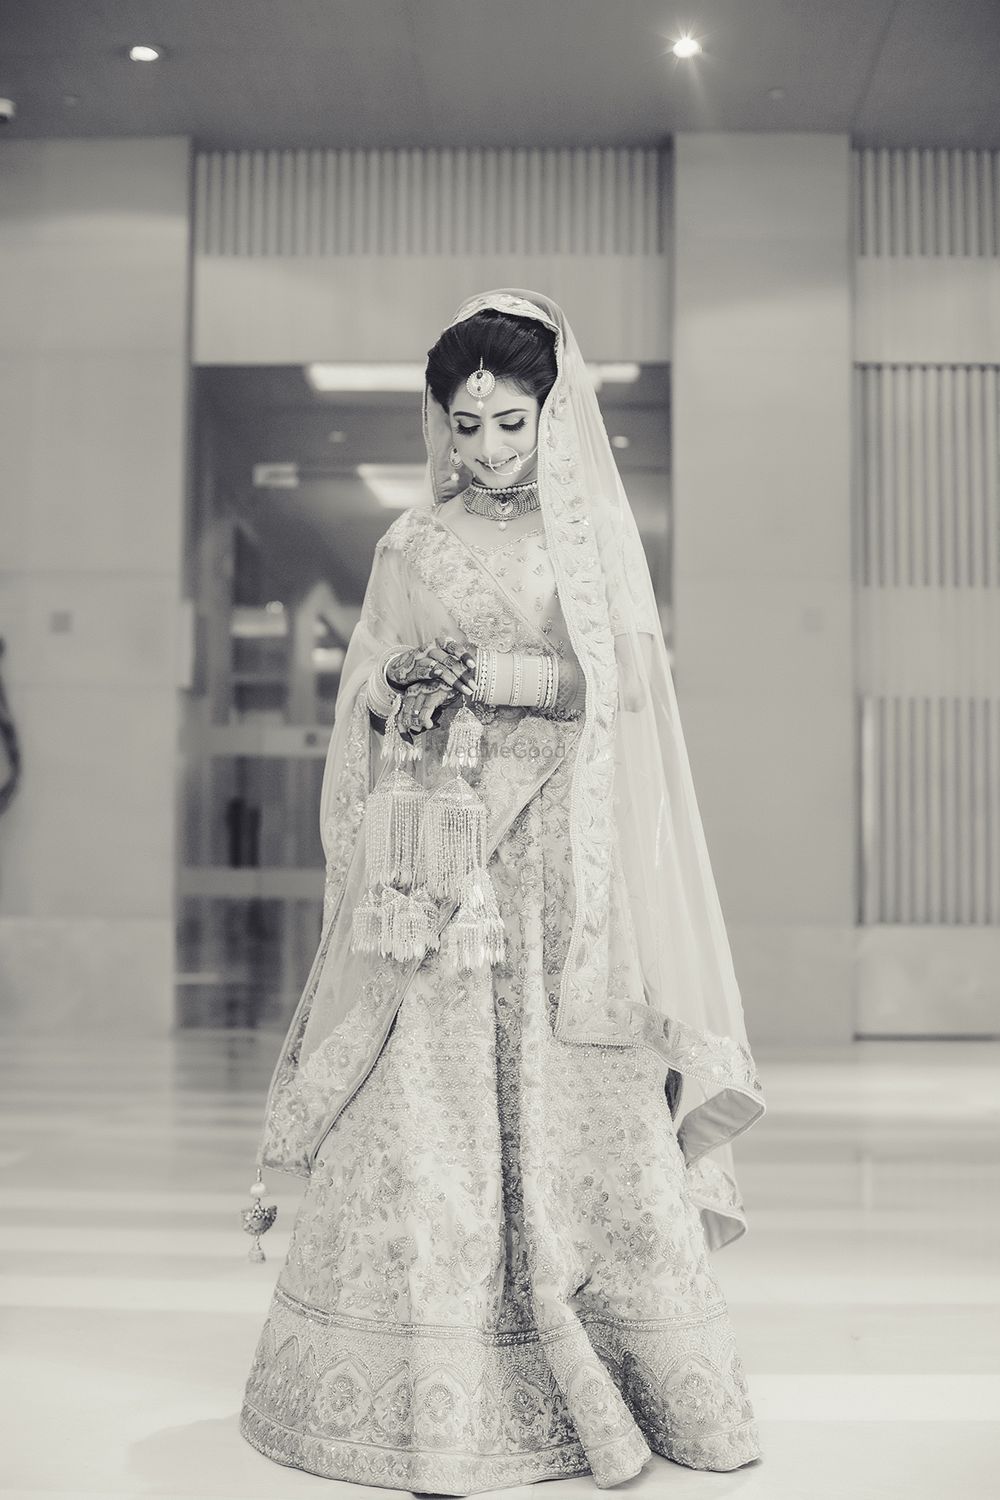 Photo From SIDHIKA & VINAY (NRI WEDDING) - By Shivram Labs